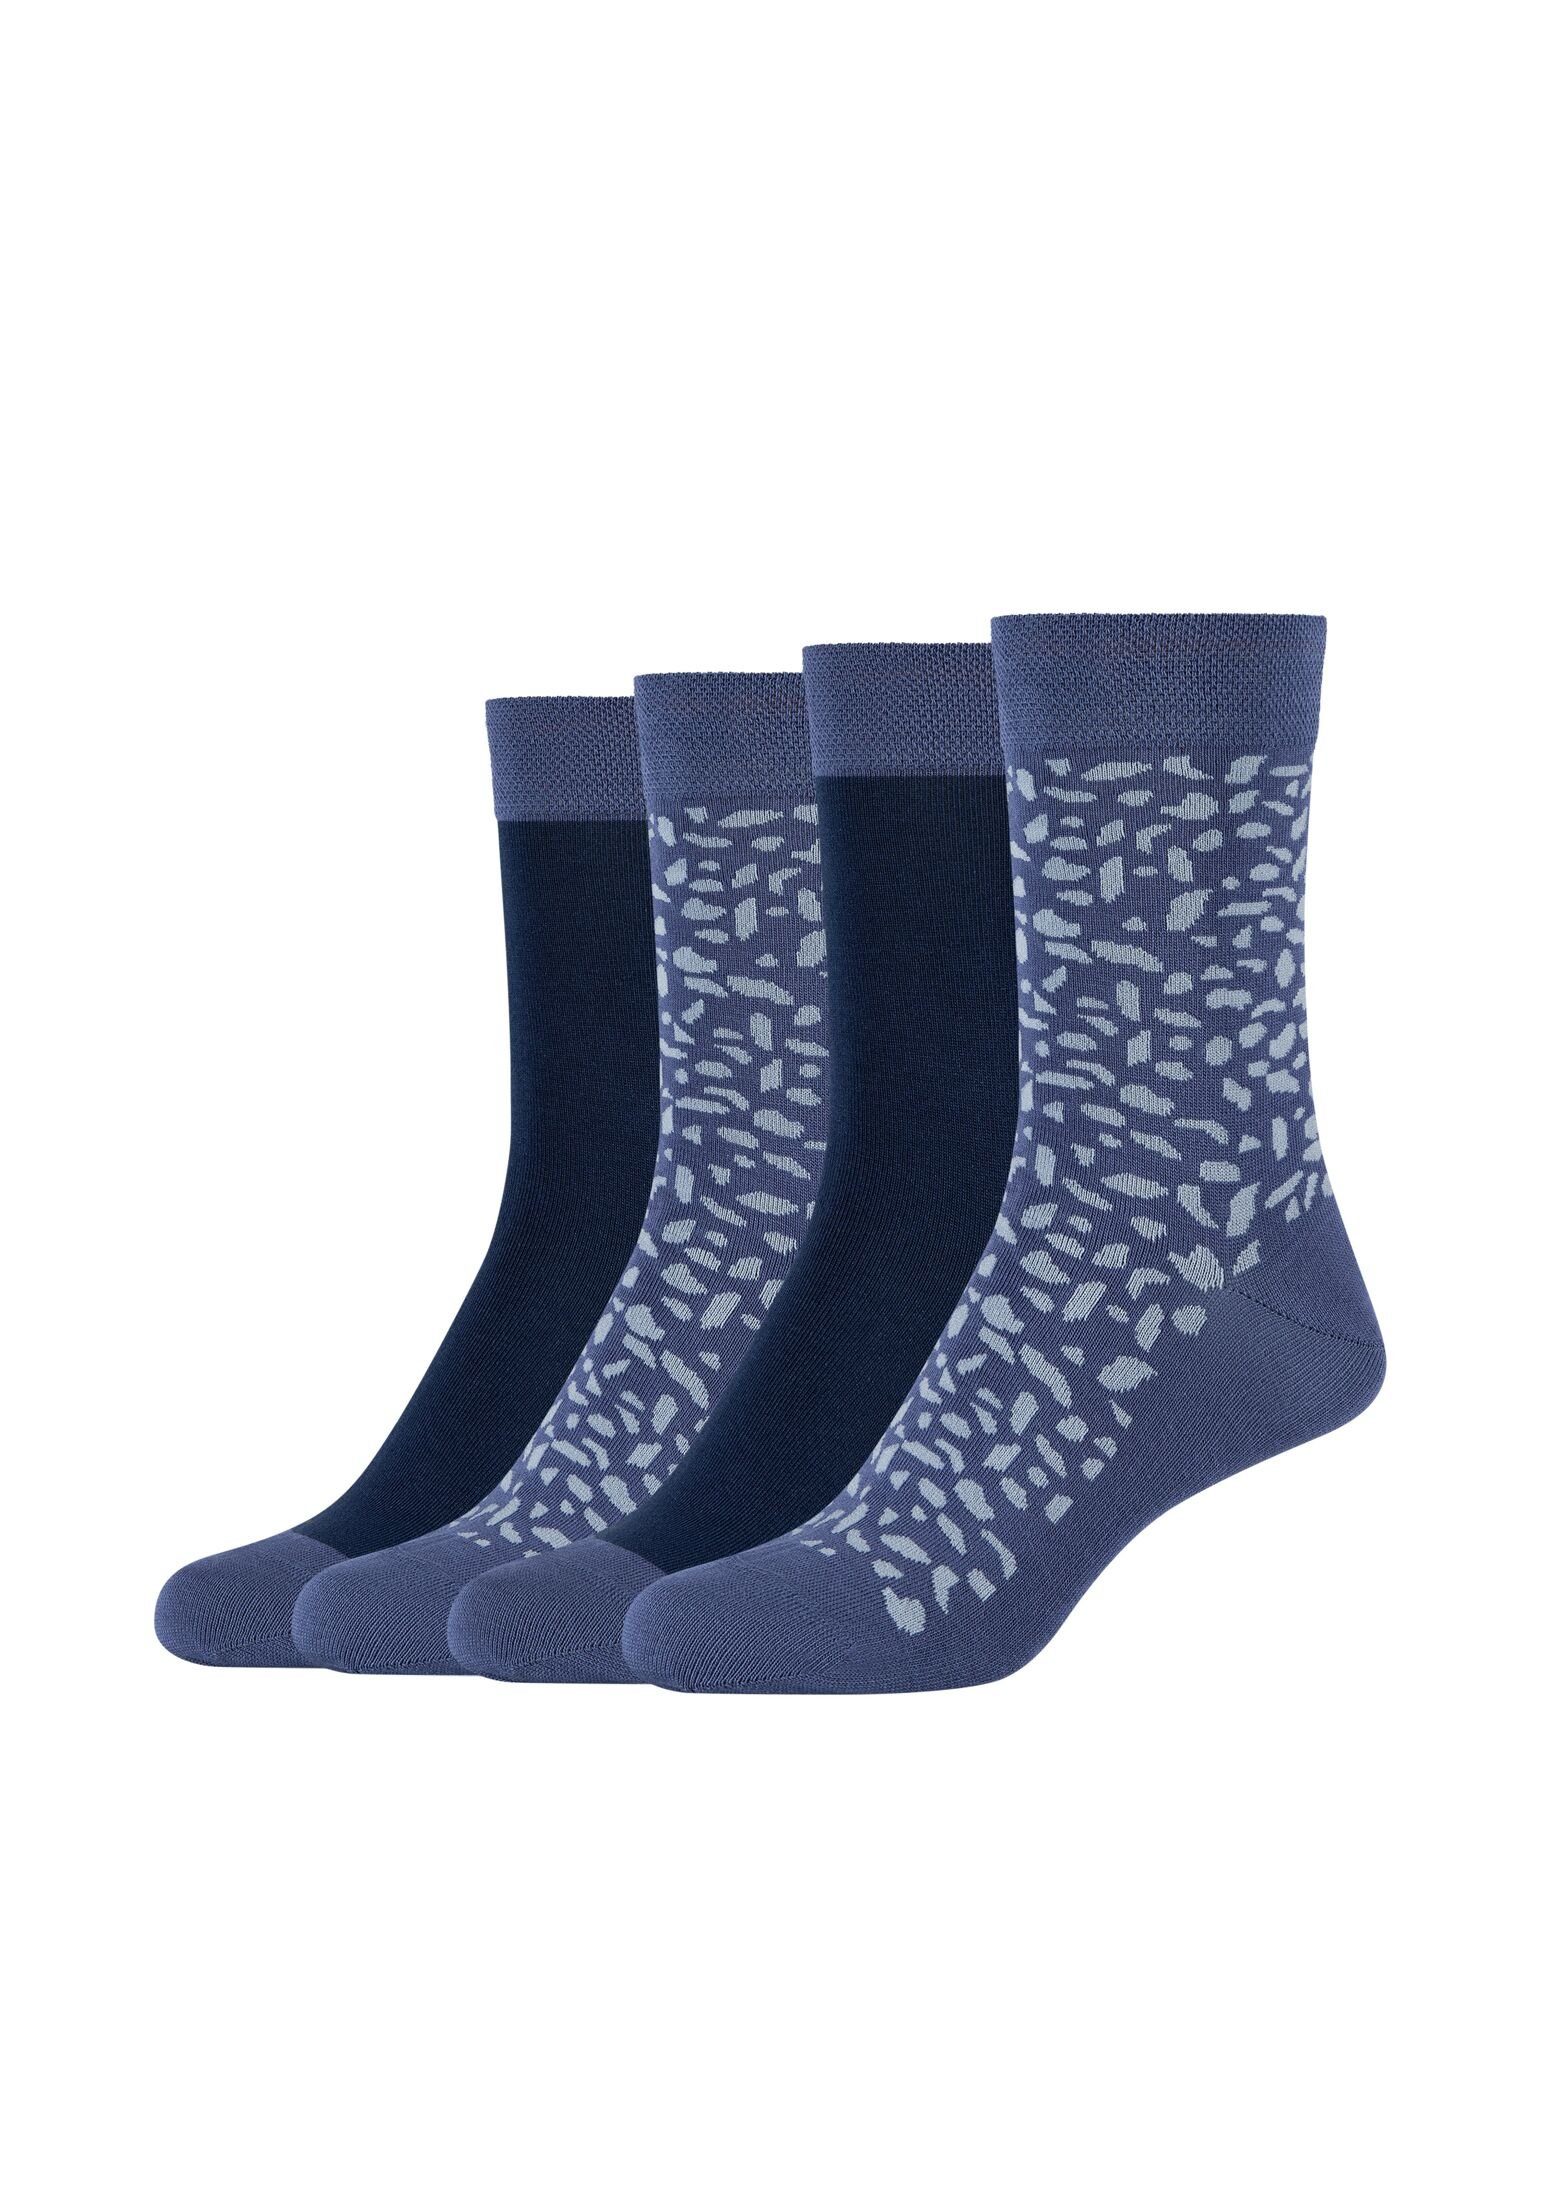 Camano Pack 4er Socken Socken blue captain's